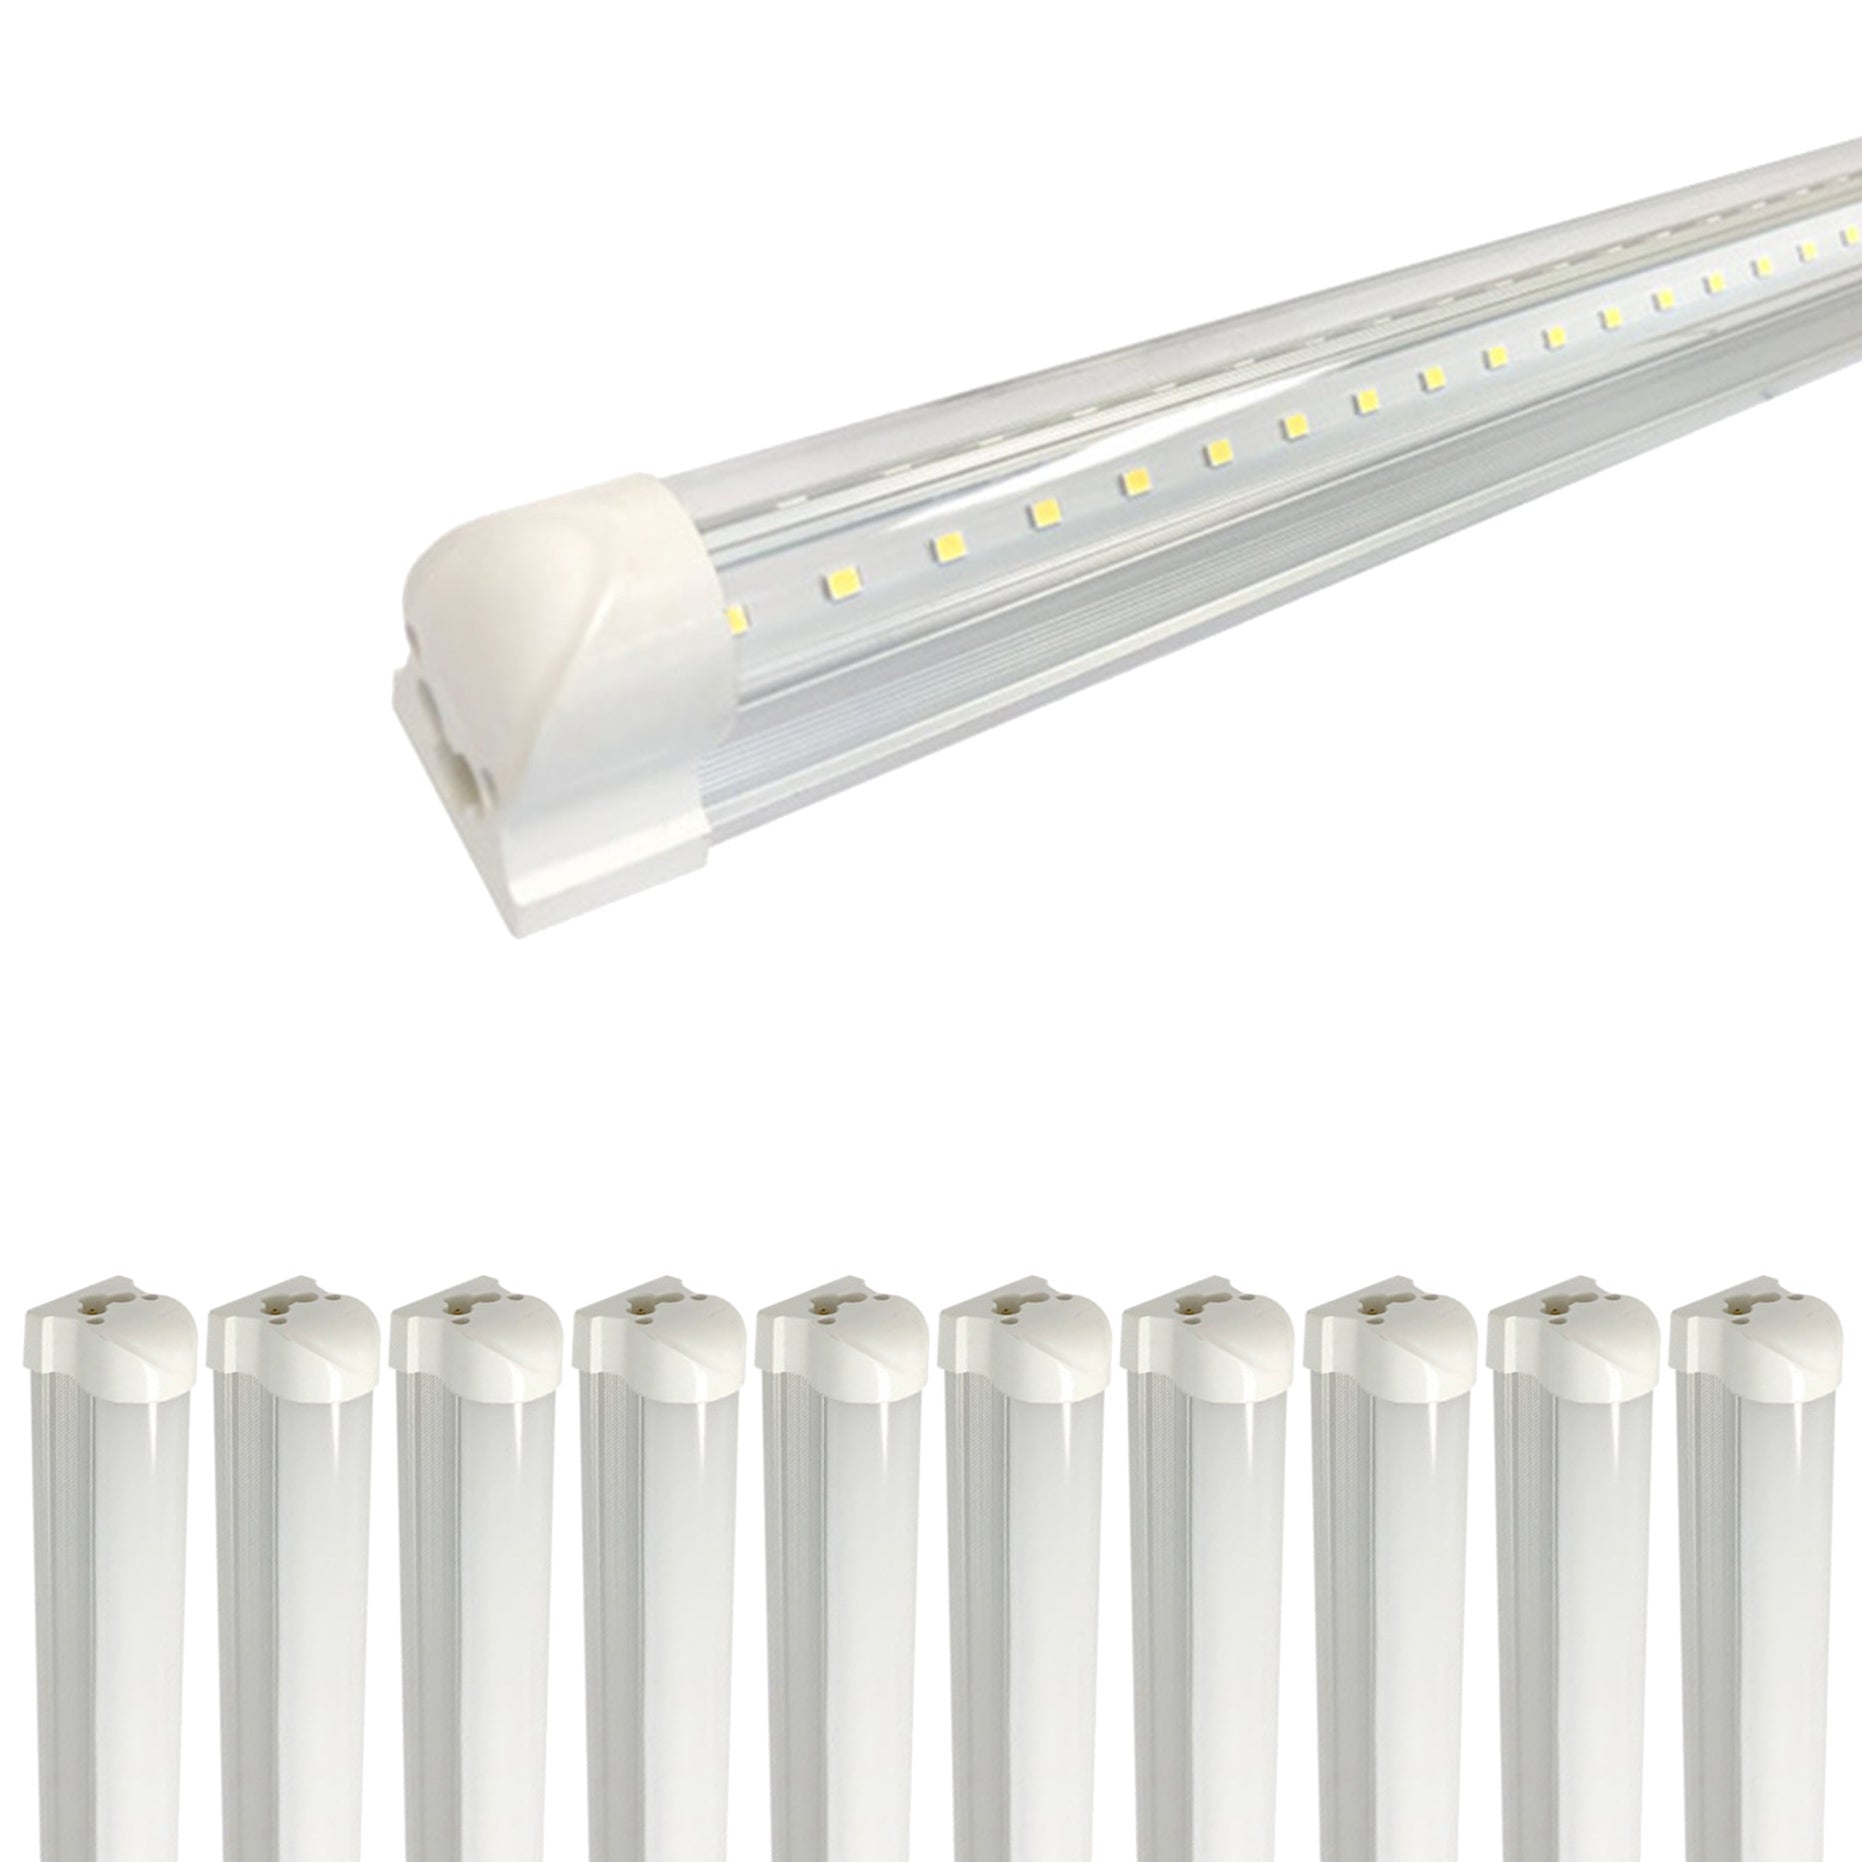 LED Light Bulb Tubes